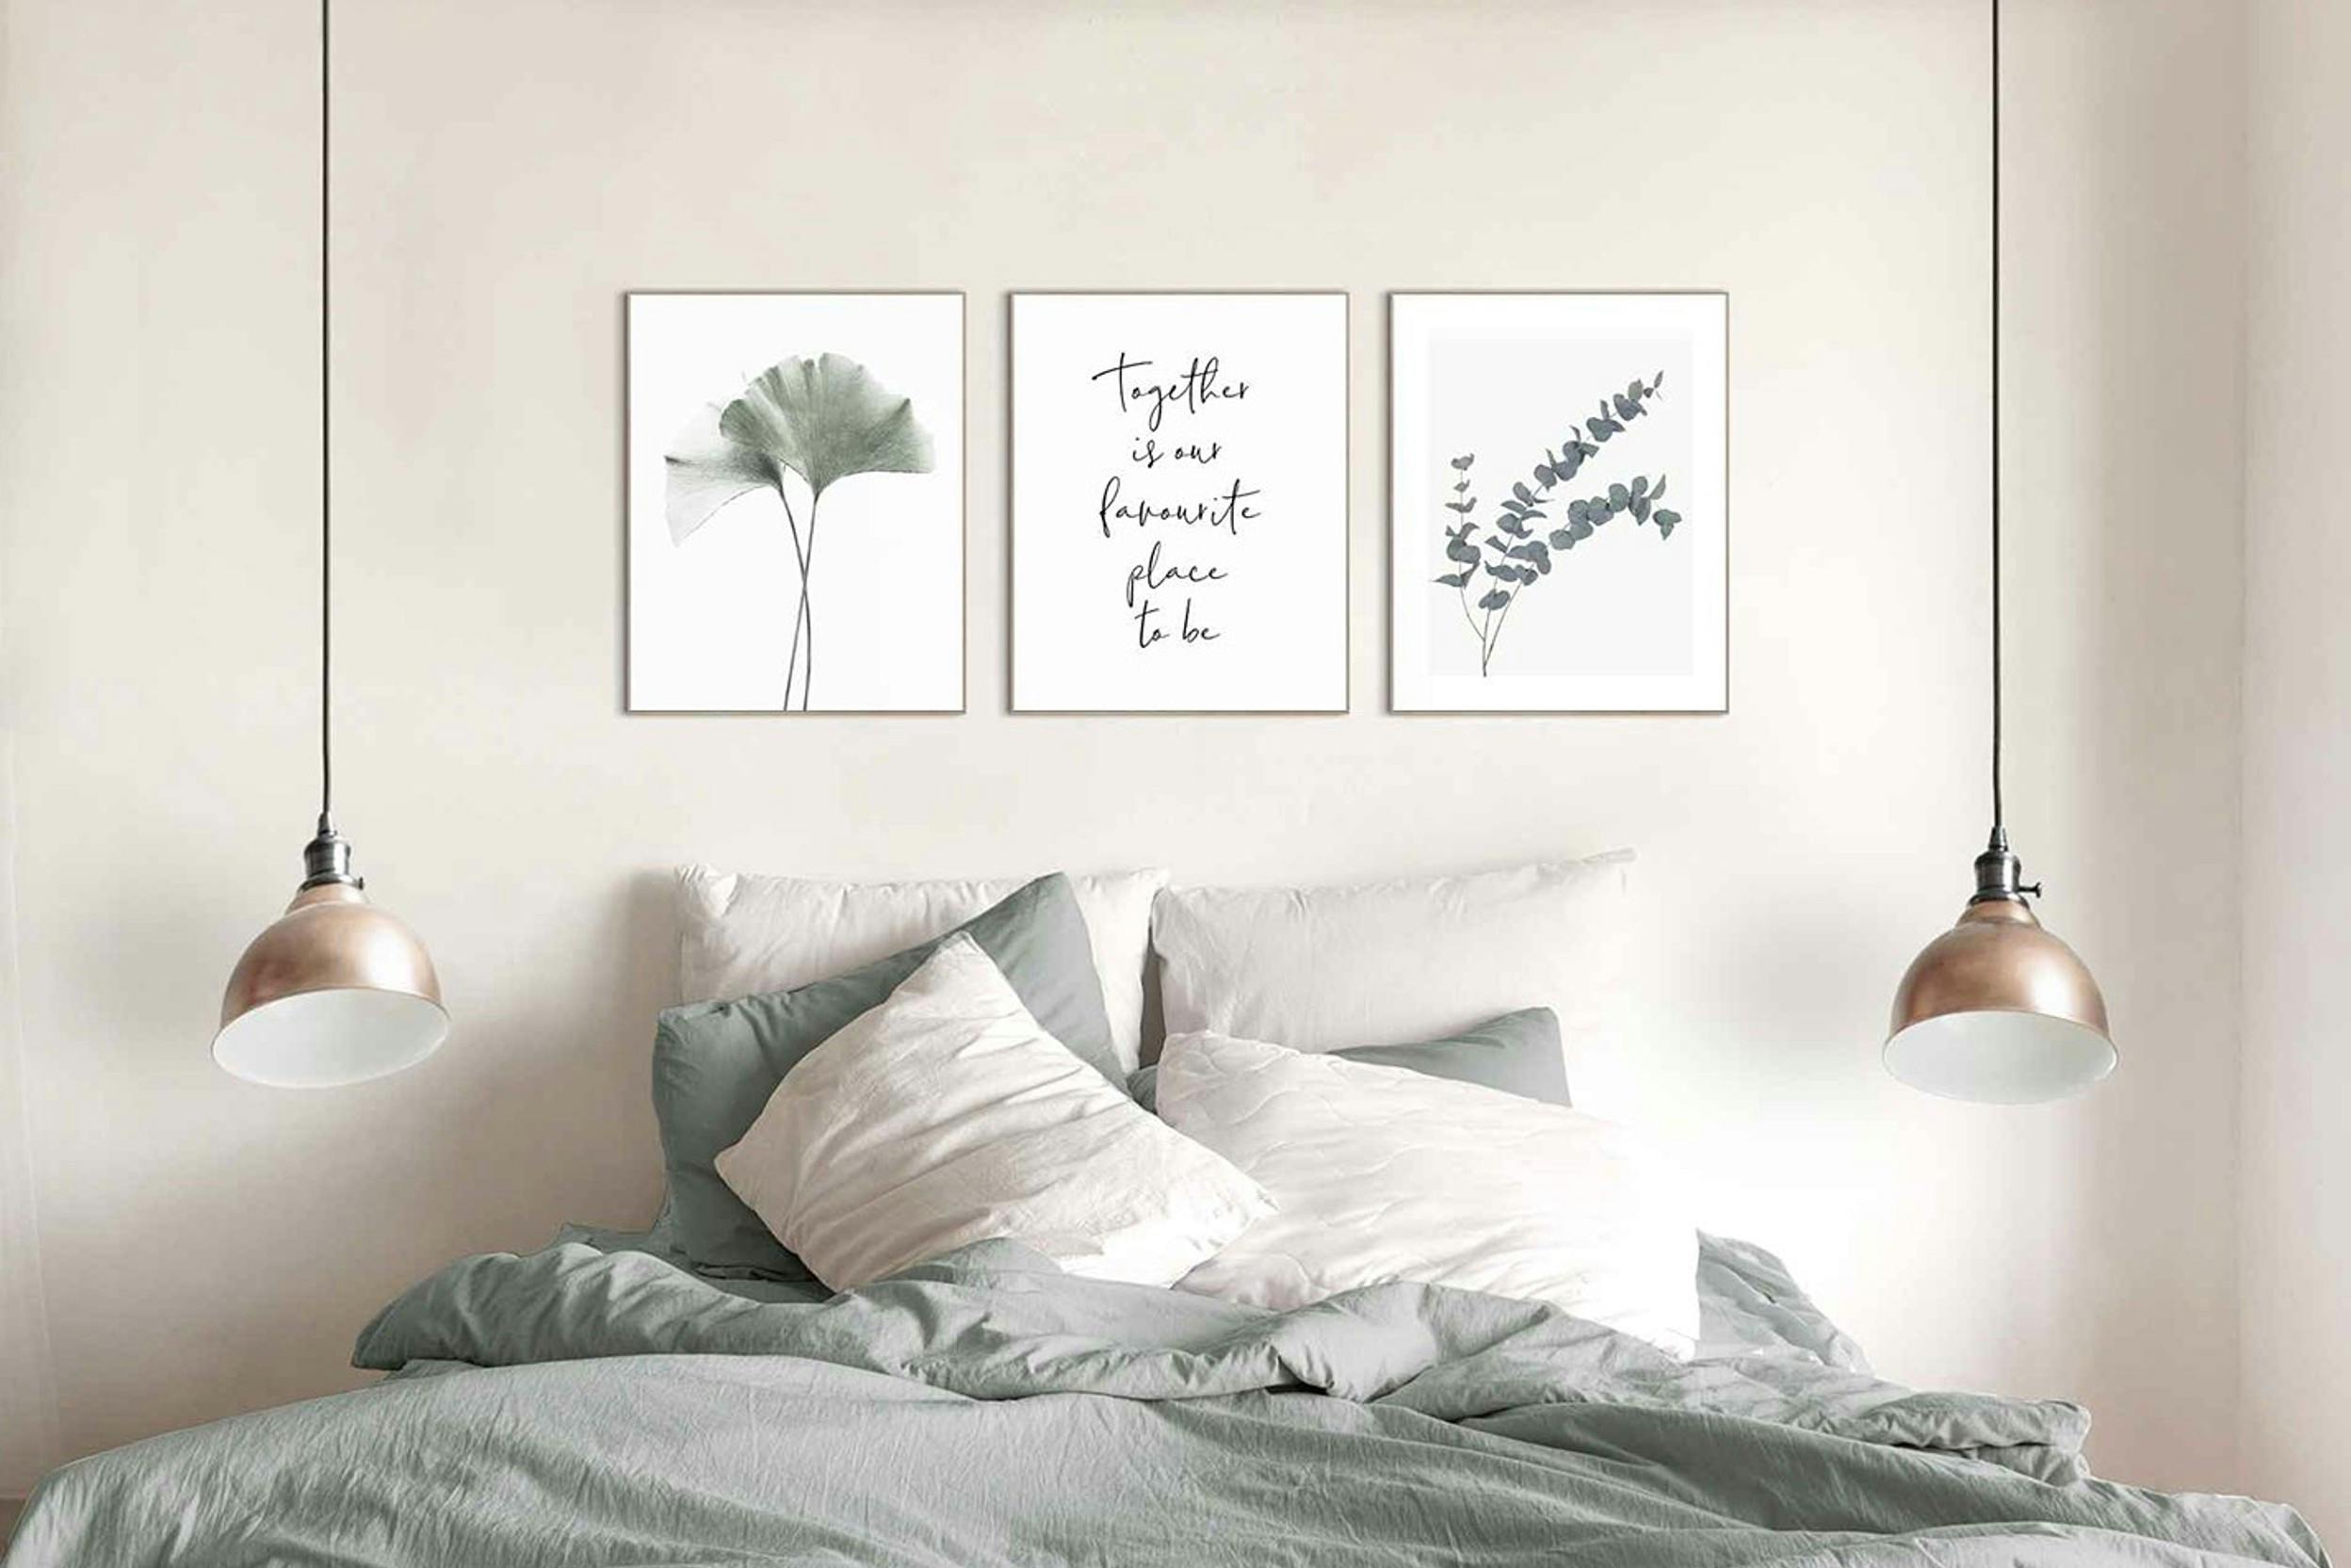 Einladender Schlafbereich mit dreiteiliger Bilderreihe ueber dem Bett